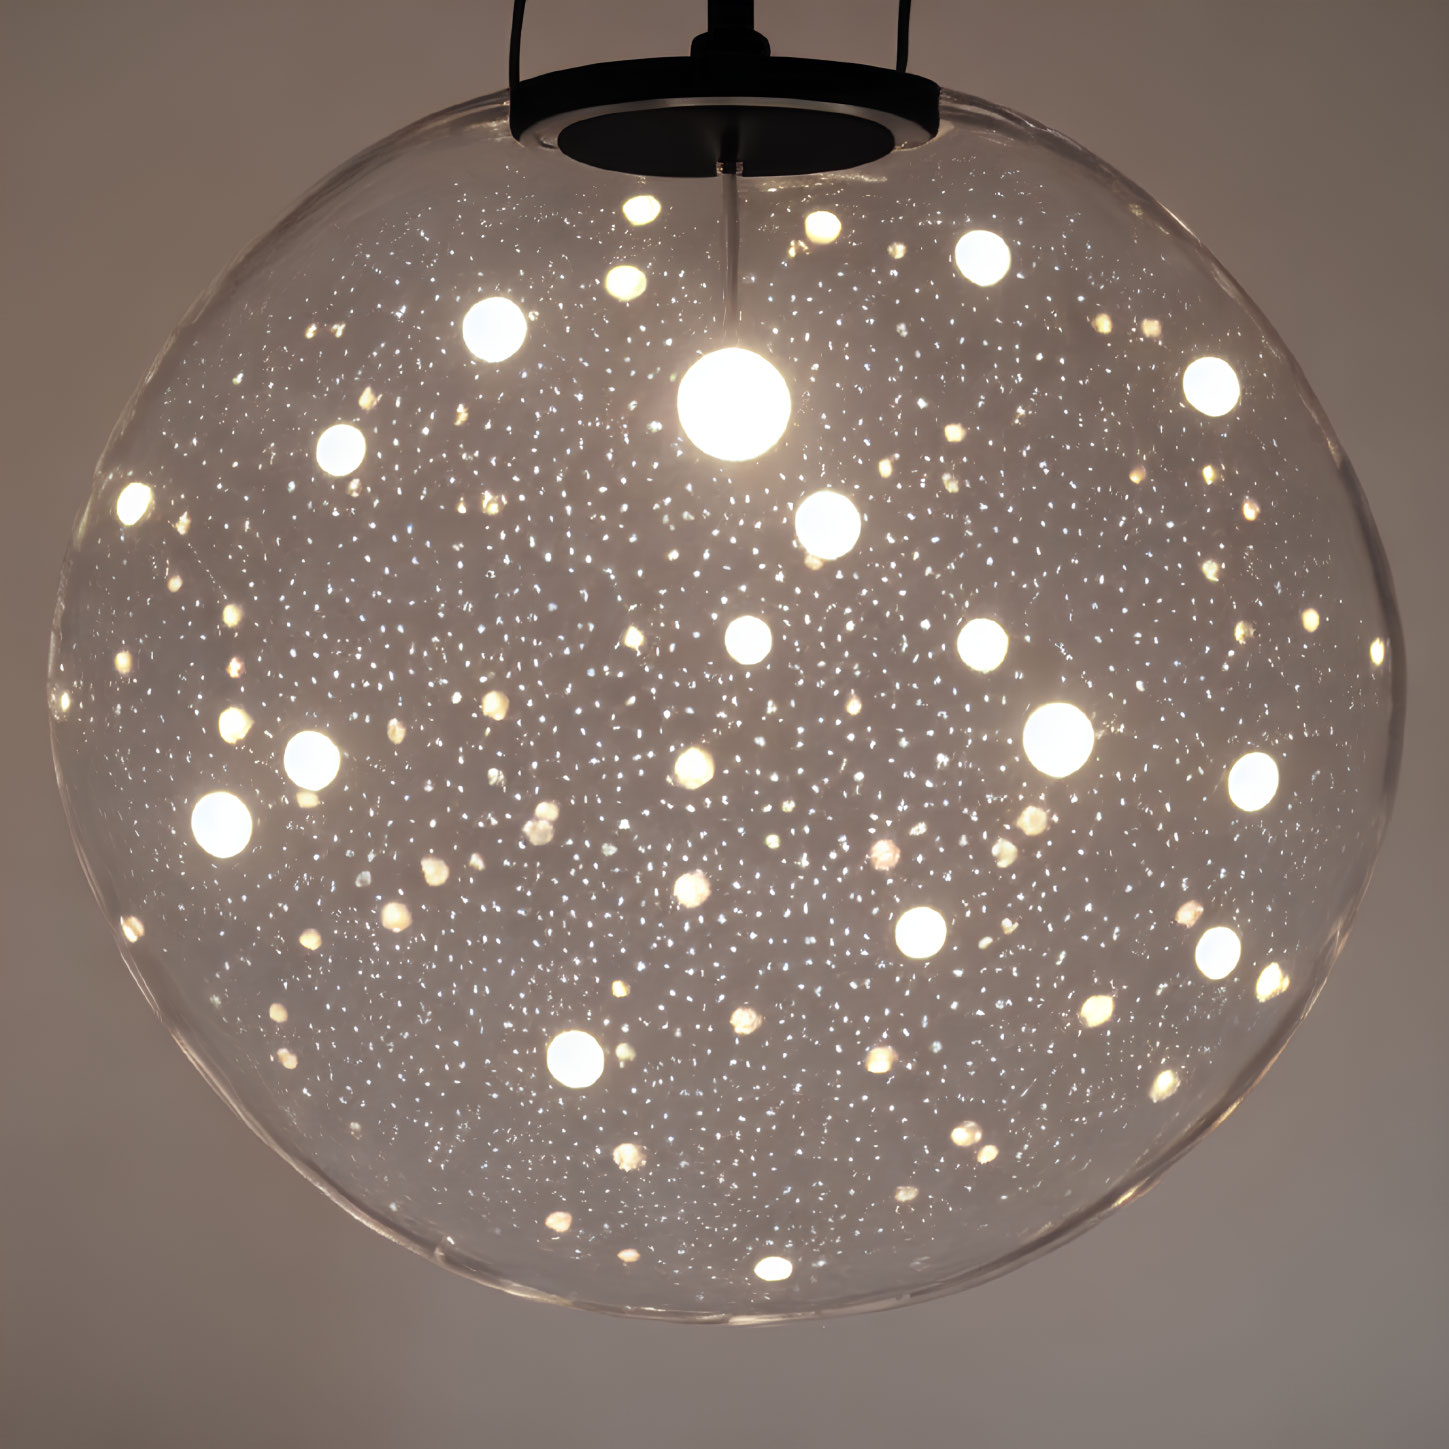 Spherical pendant light resembling star-filled night sky